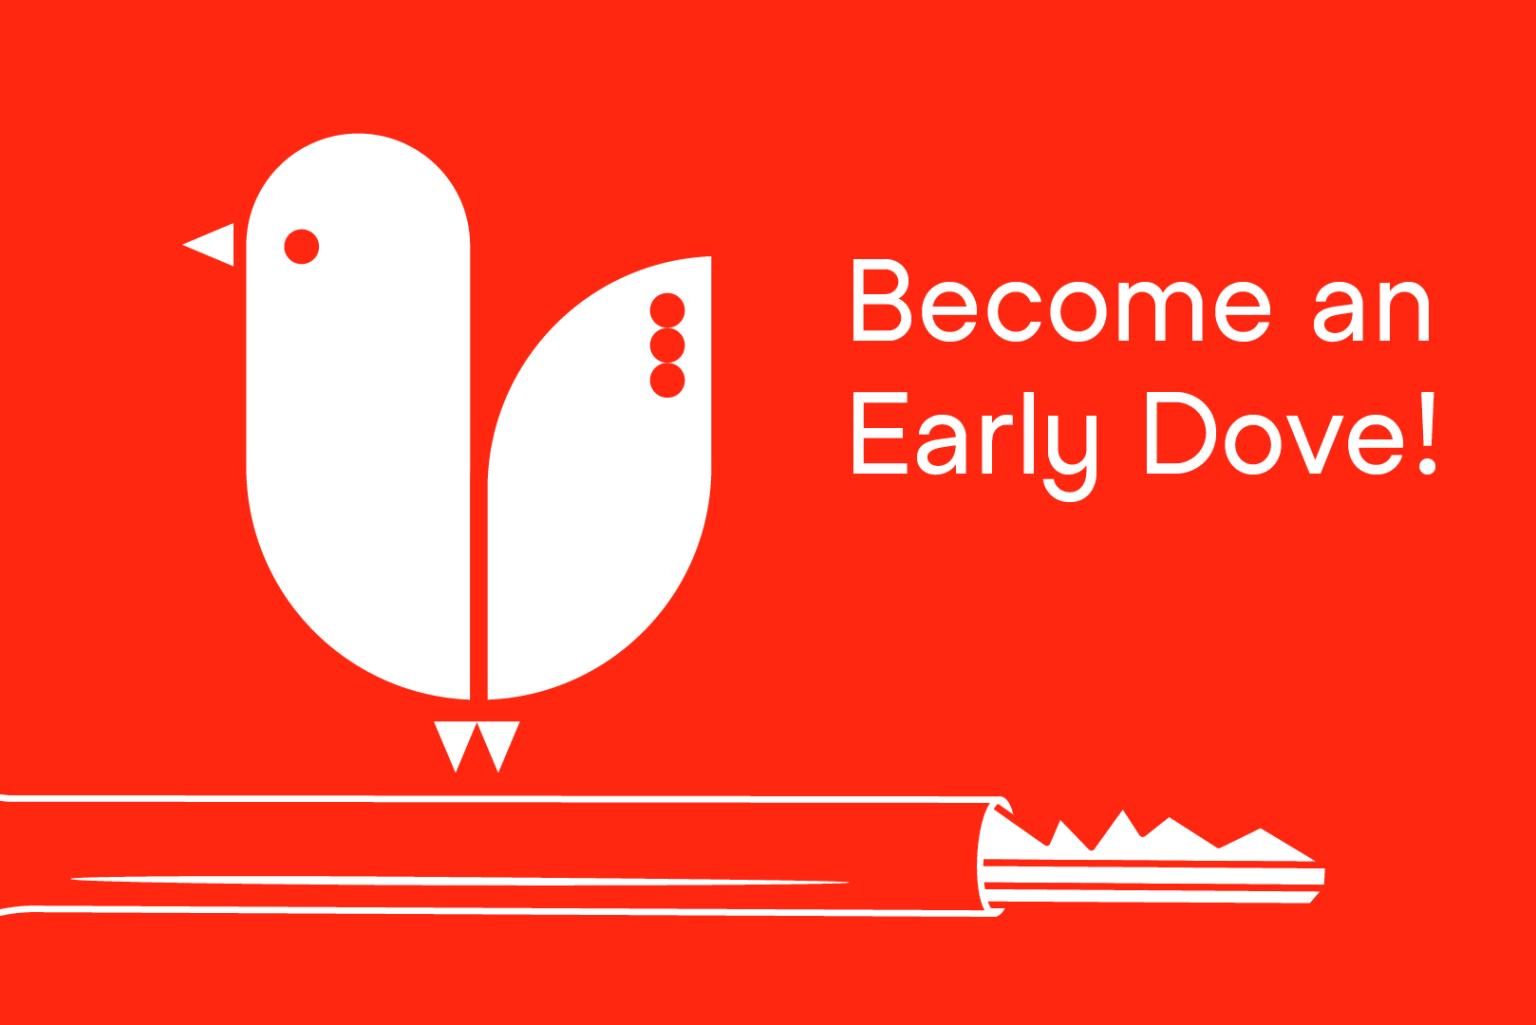 Eine rote Texttafel zeigt die Illustration eines kleinen Vogelkükens, das auf einem Schlüssel sitzt. Daneben steht der Text: "Become an Early Dove".